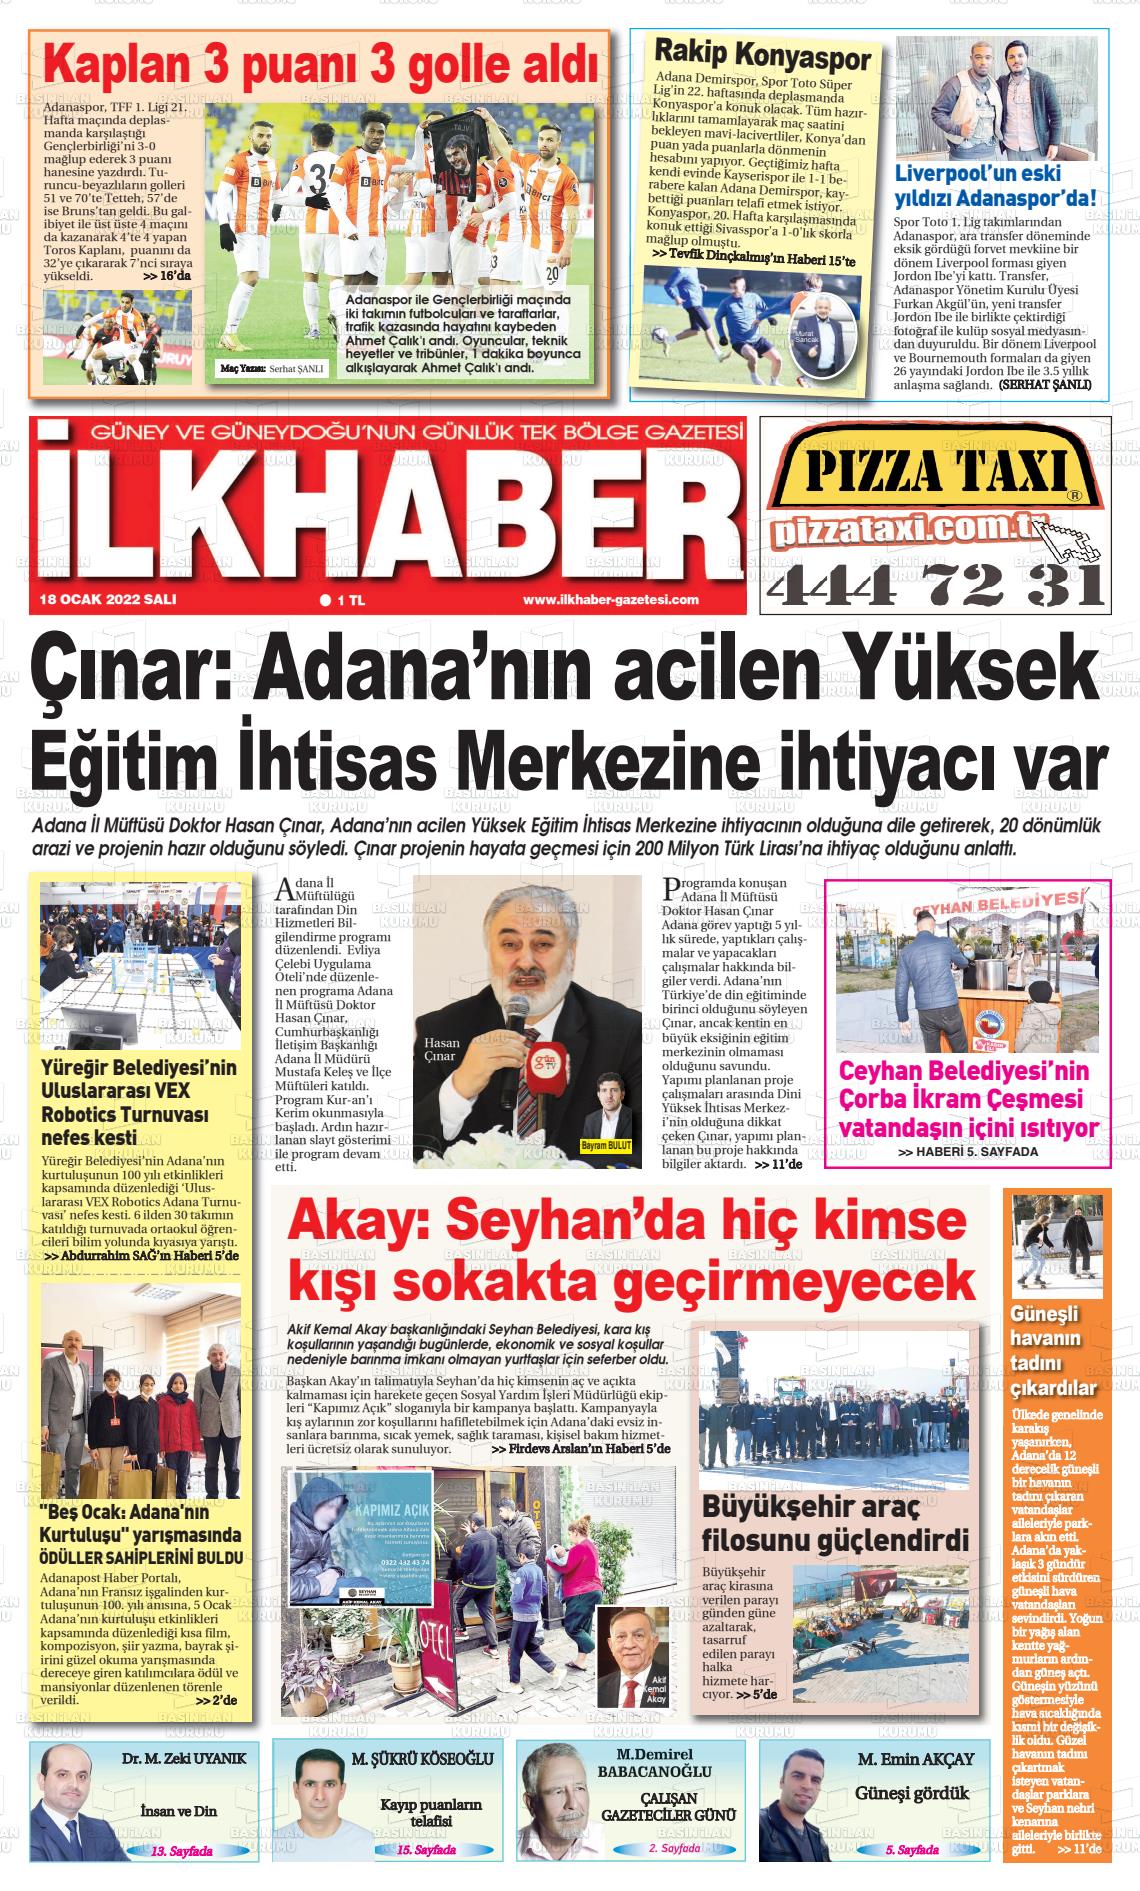 18 Ocak 2022 İlk Haber Gazete Manşeti